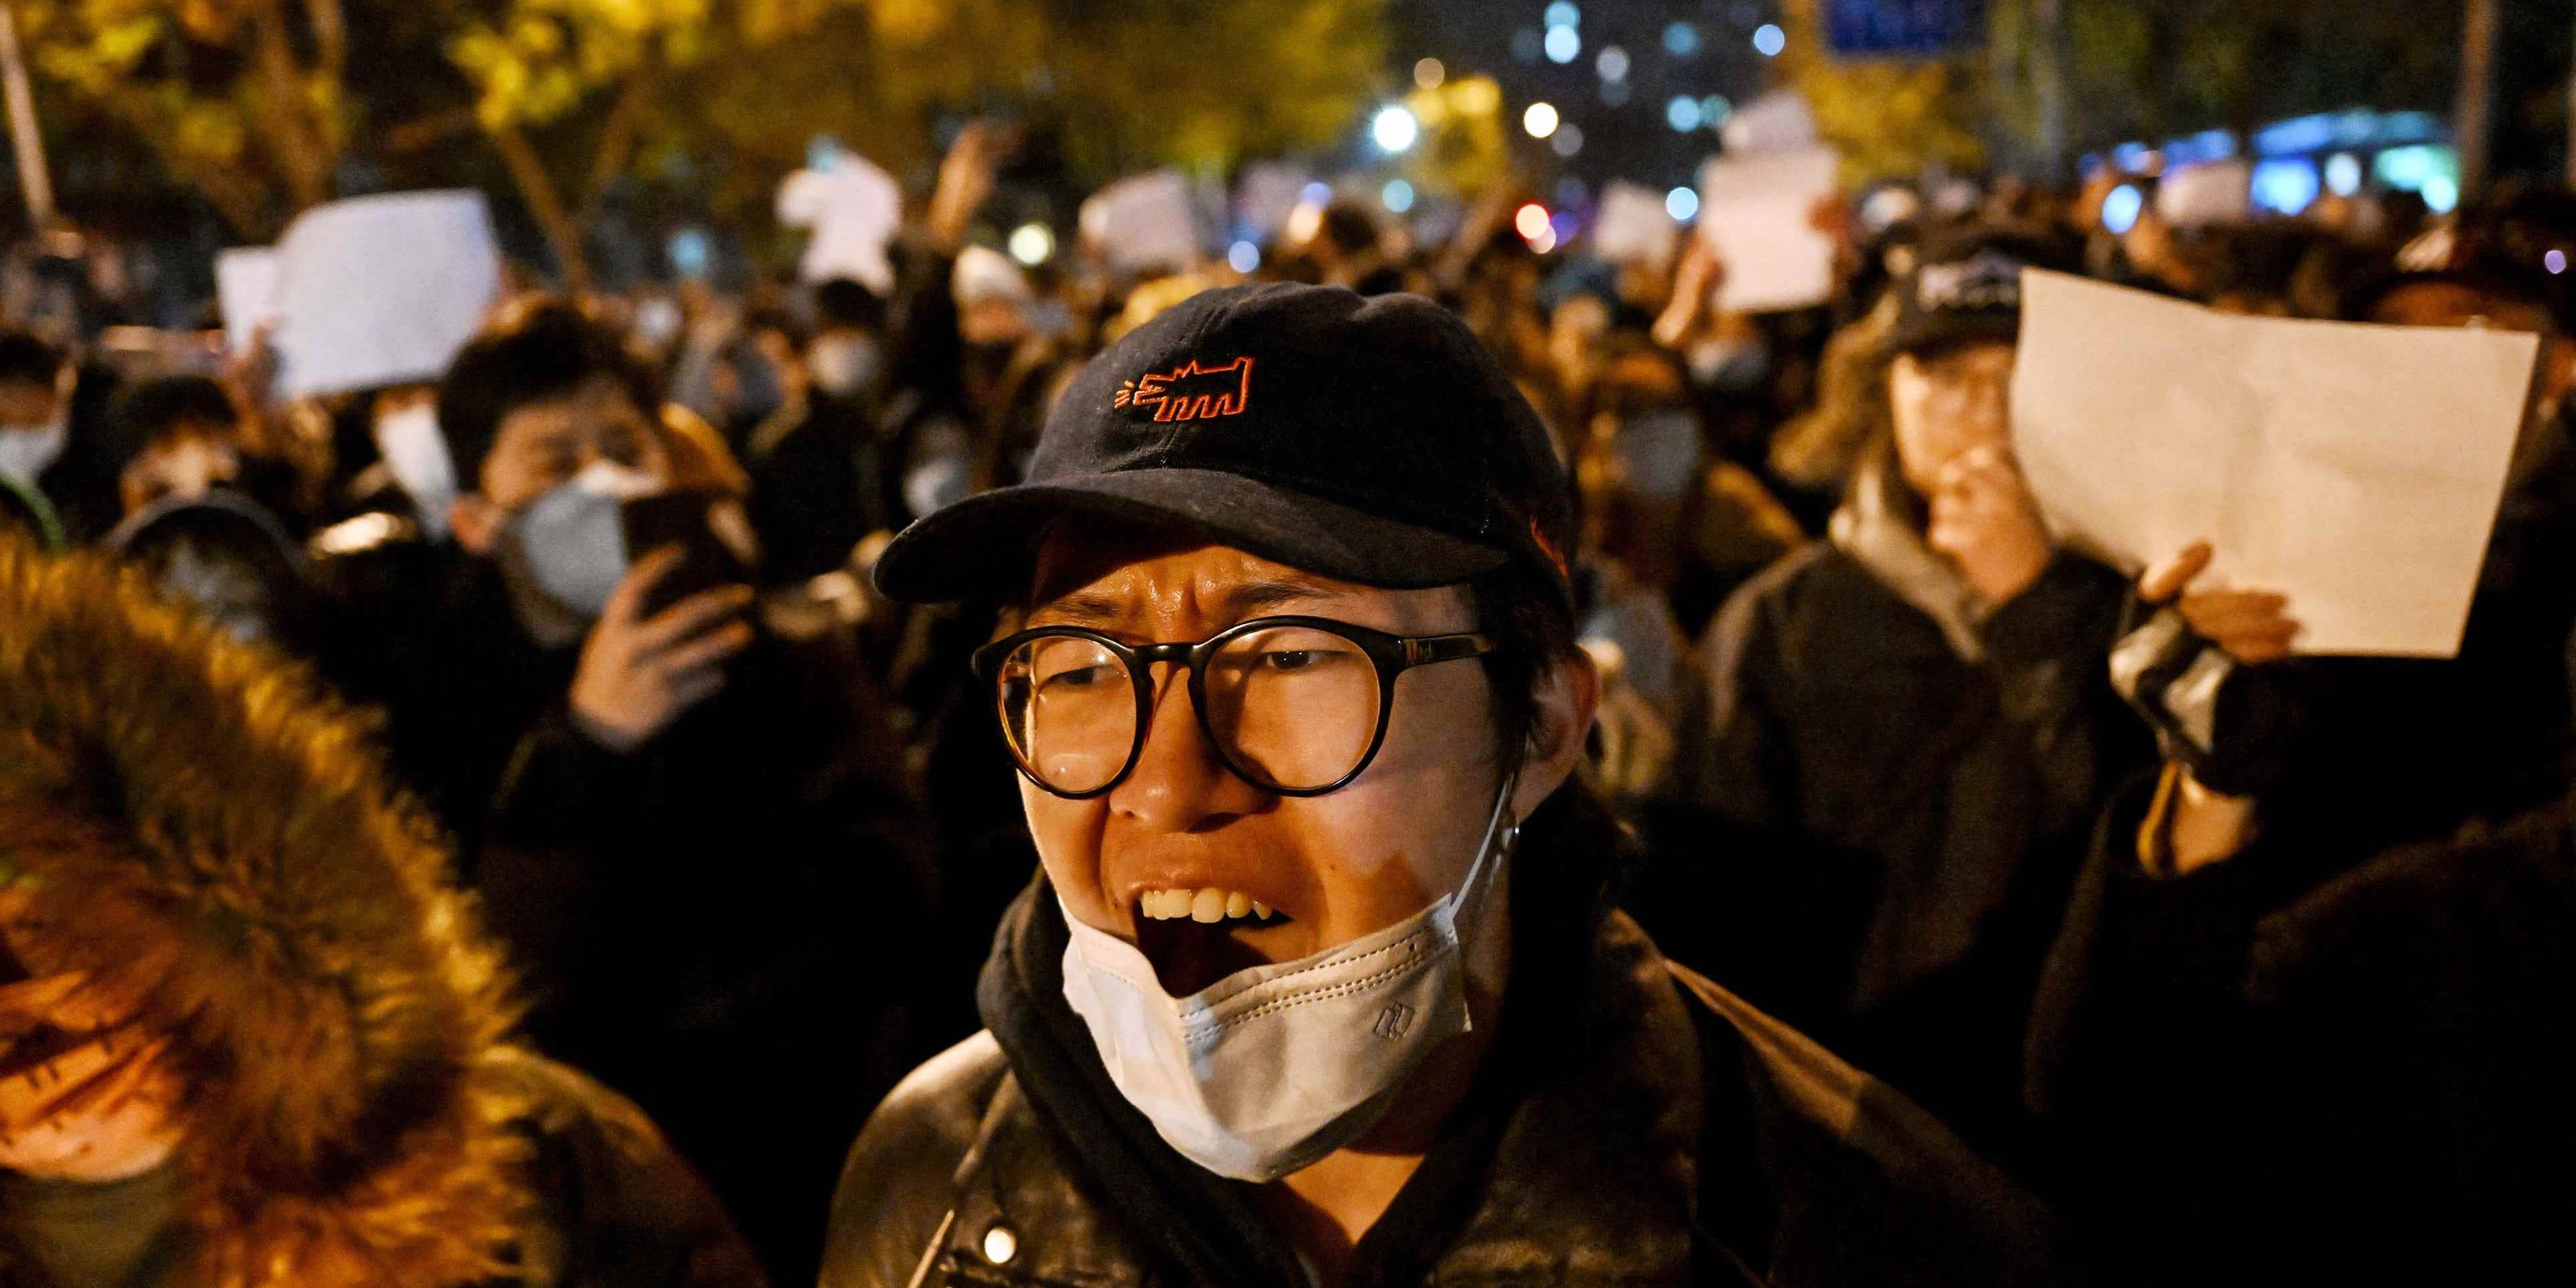 Tausende von Demonstranten brechen in seltenen Protesten gegen die COVID-19-Beschränkungen in ganz China aus.